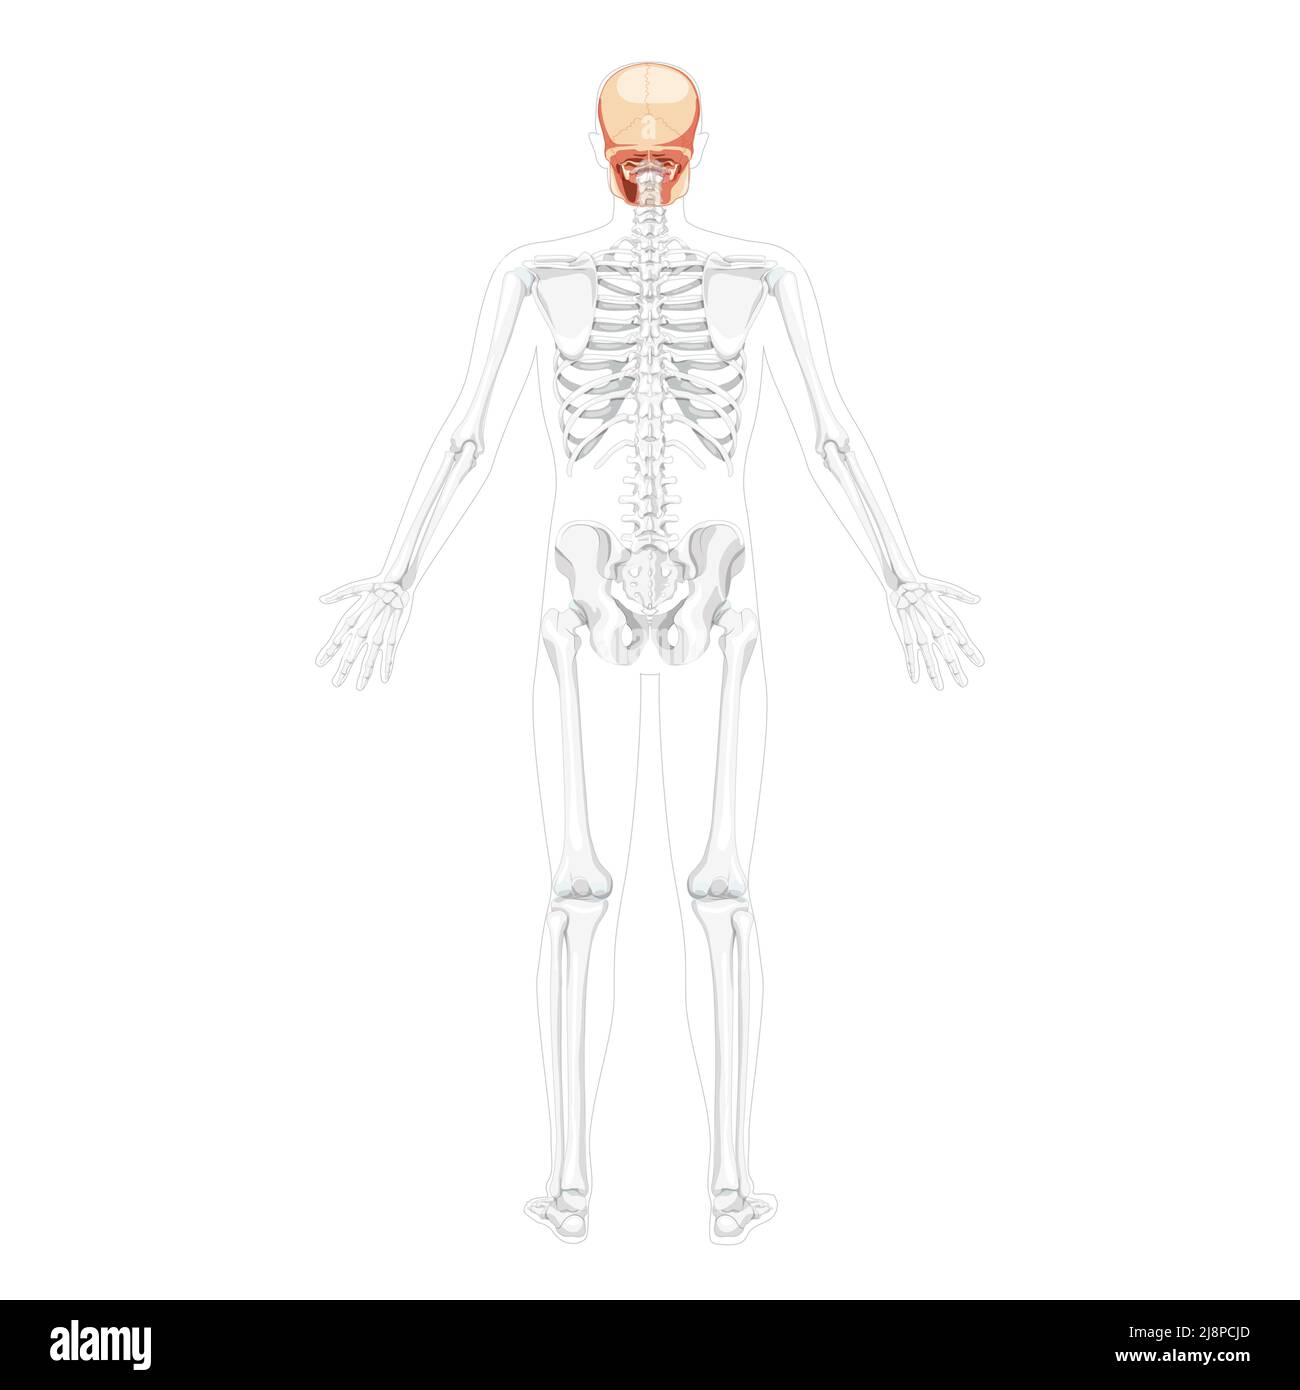 Tête humaine Skull Skeleton vue arrière avec mains ouvertes partiellement transparente position du corps. Anatomiquement correct. Modèle réaliste et plat de couleur naturelle illustration vectorielle isolée sur fond blanc Illustration de Vecteur